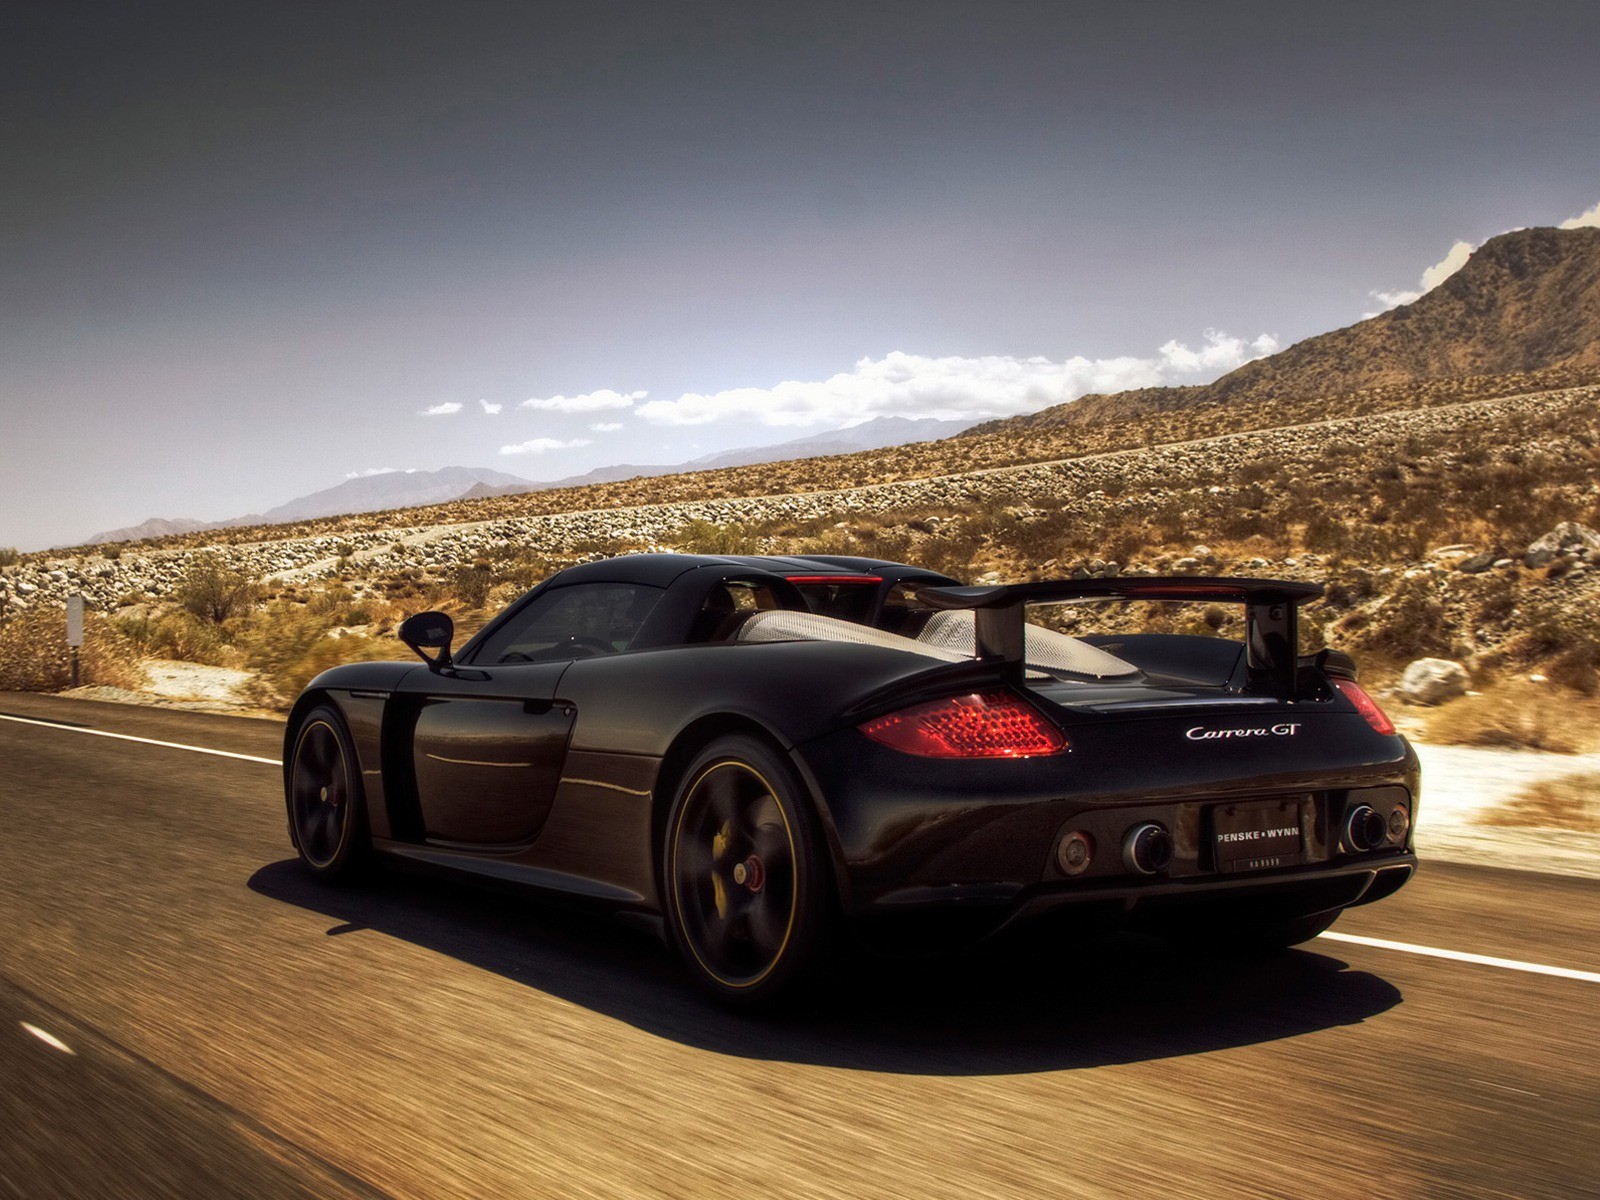 Carrera Gt Porsche Cars Hires Desktop Wallpaper